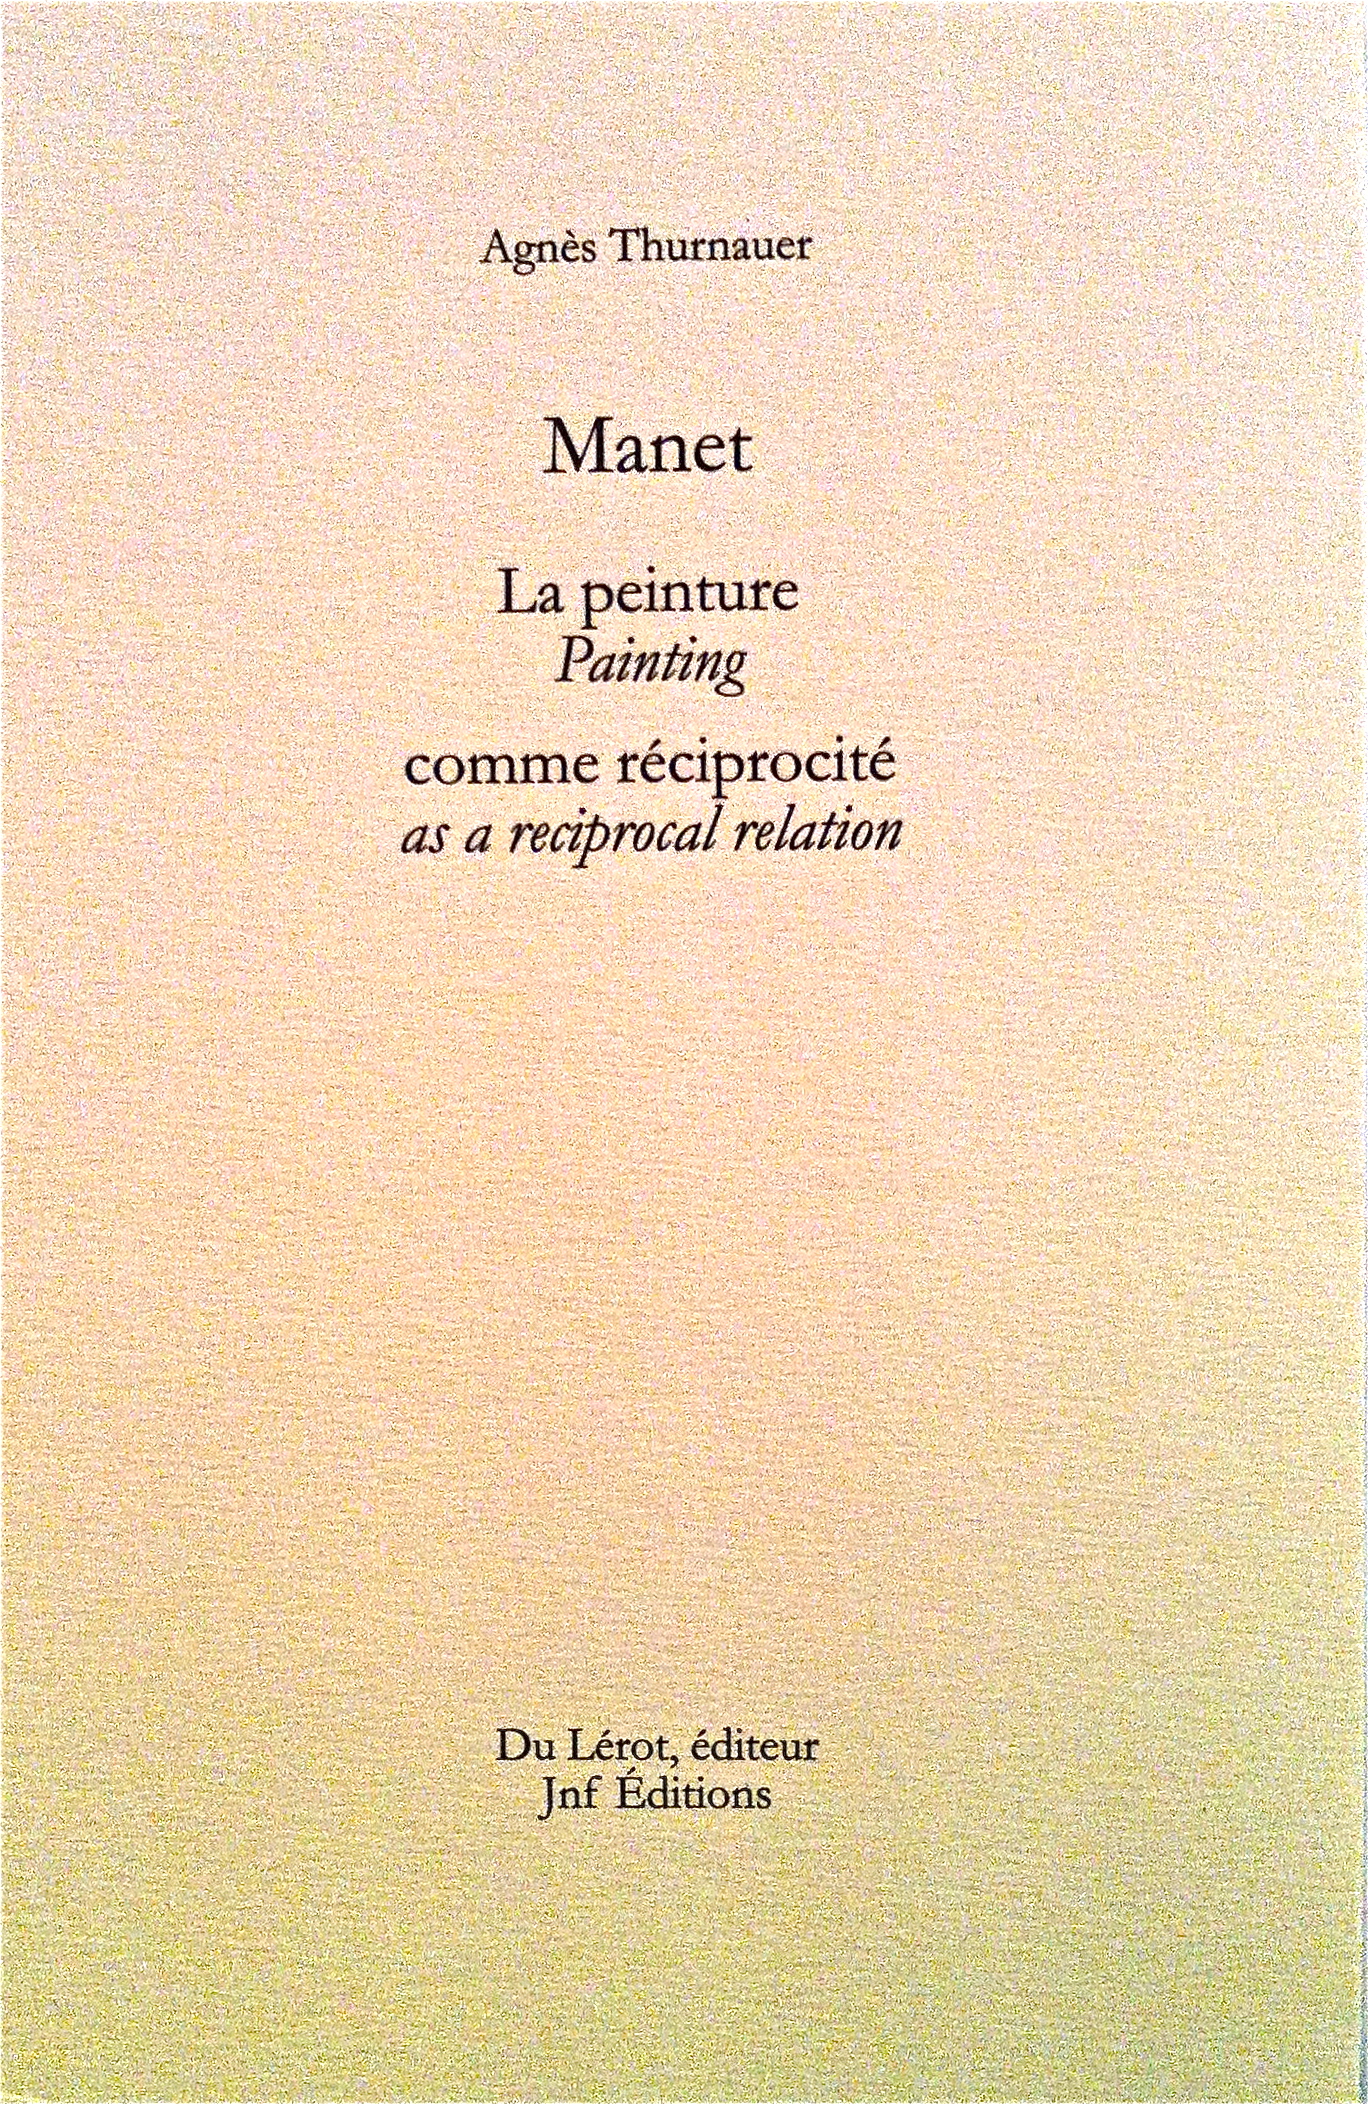 Representation of Manet, la peinture comme réciprocité- conférence à Yale